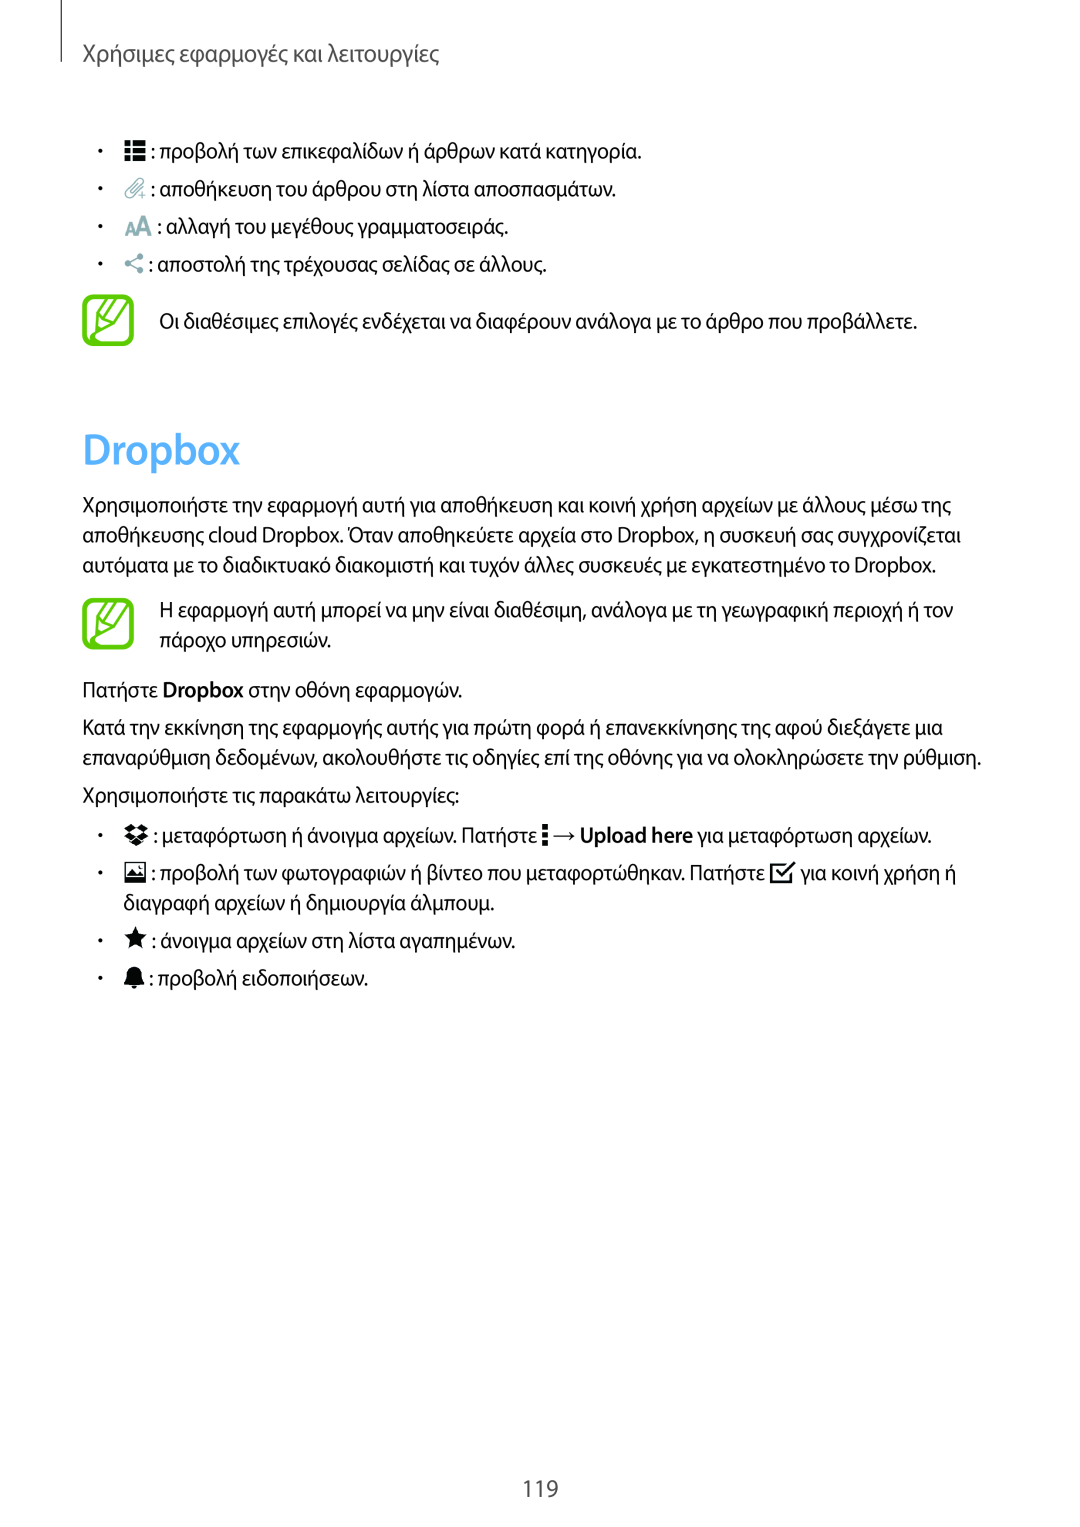 Samsung SM-T805NZWAEUR, SM-T805NTSAEUR manual Dropbox, Χρήσιμες εφαρμογές και λειτουργίες 